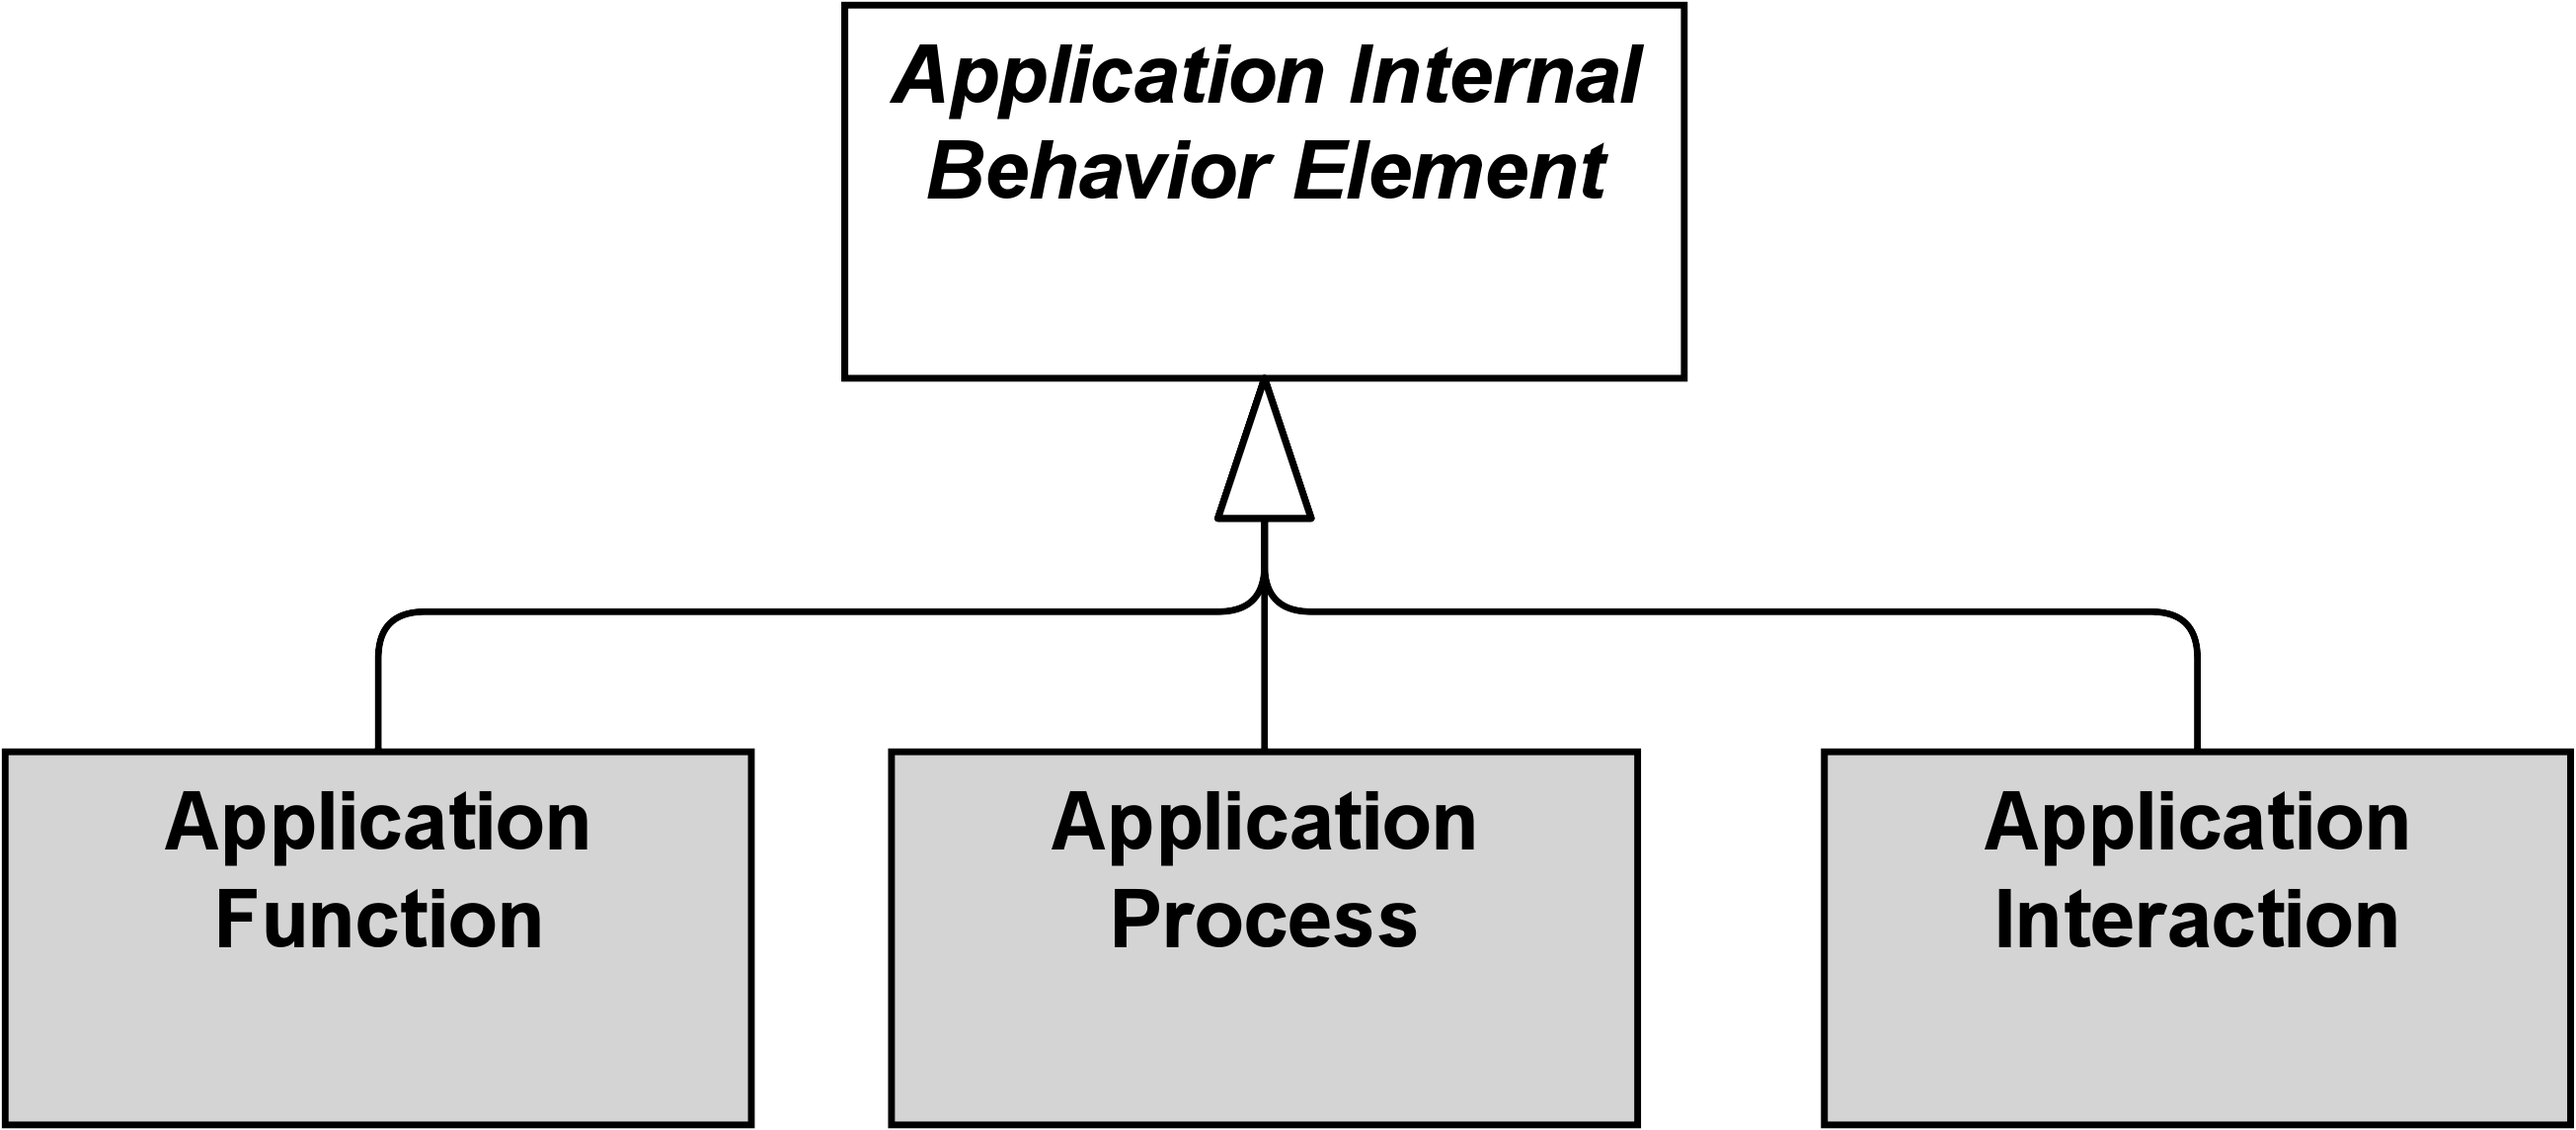 fig Application Internal Behavior Elements